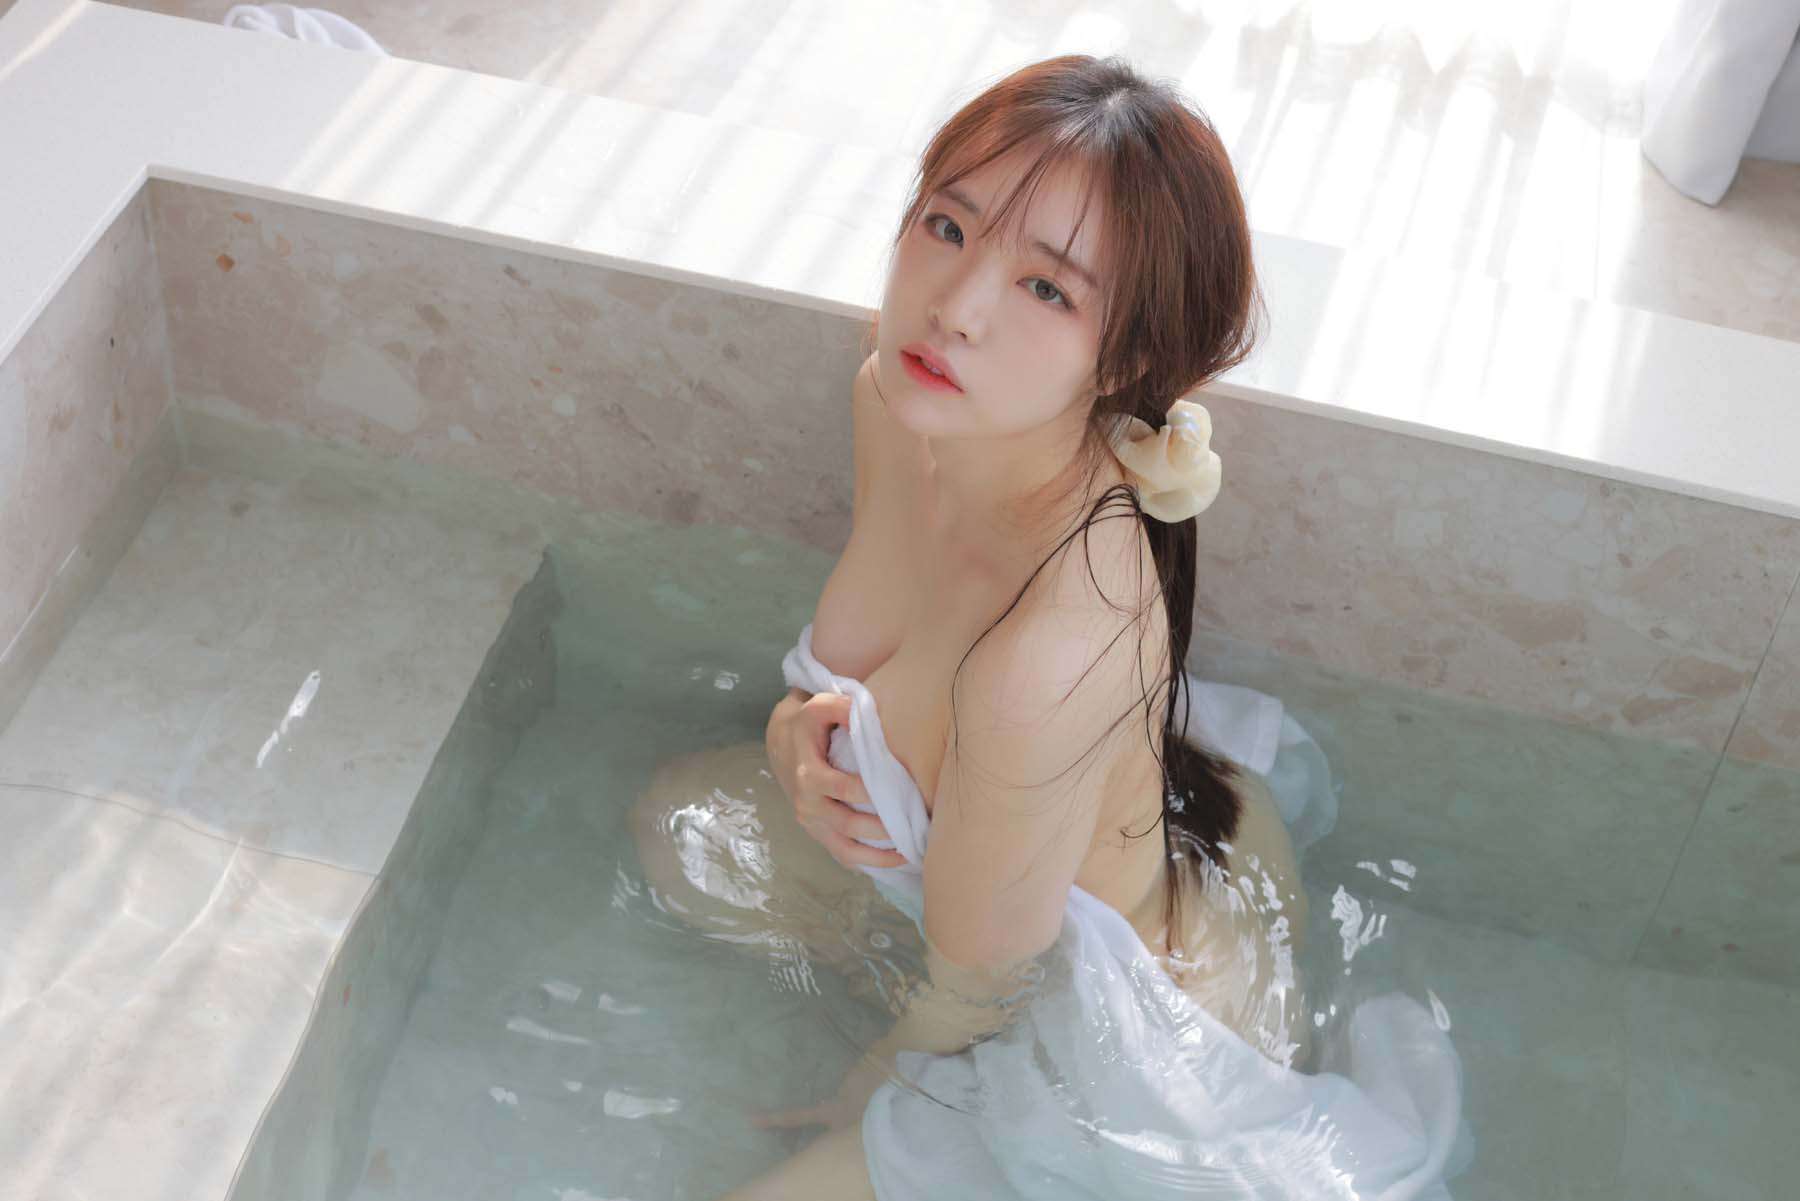 [Model] Rina (モモリナ) - Sensual pleasures in Ryokan